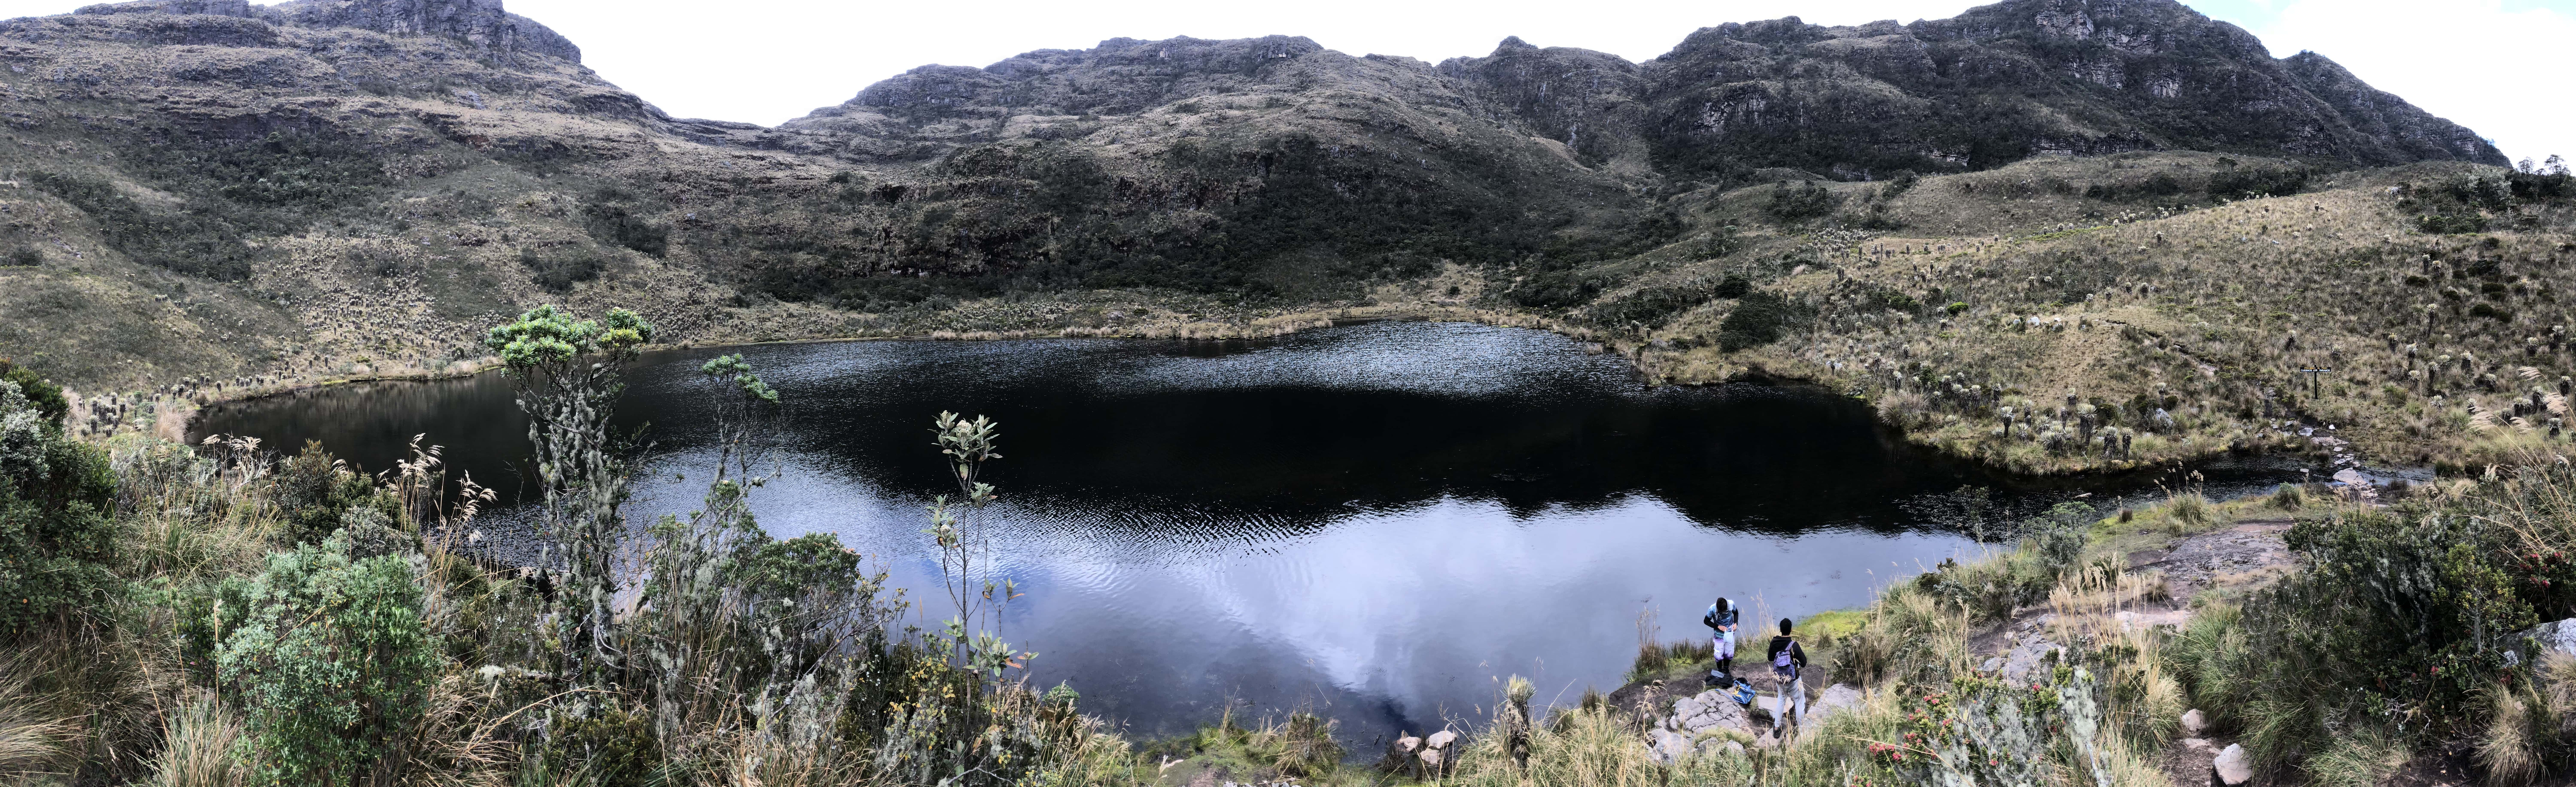 Lake Iguaque at Iguaque Flora and Fauna Sanctuary near Villa de Leyva, Boyacá, Colombia